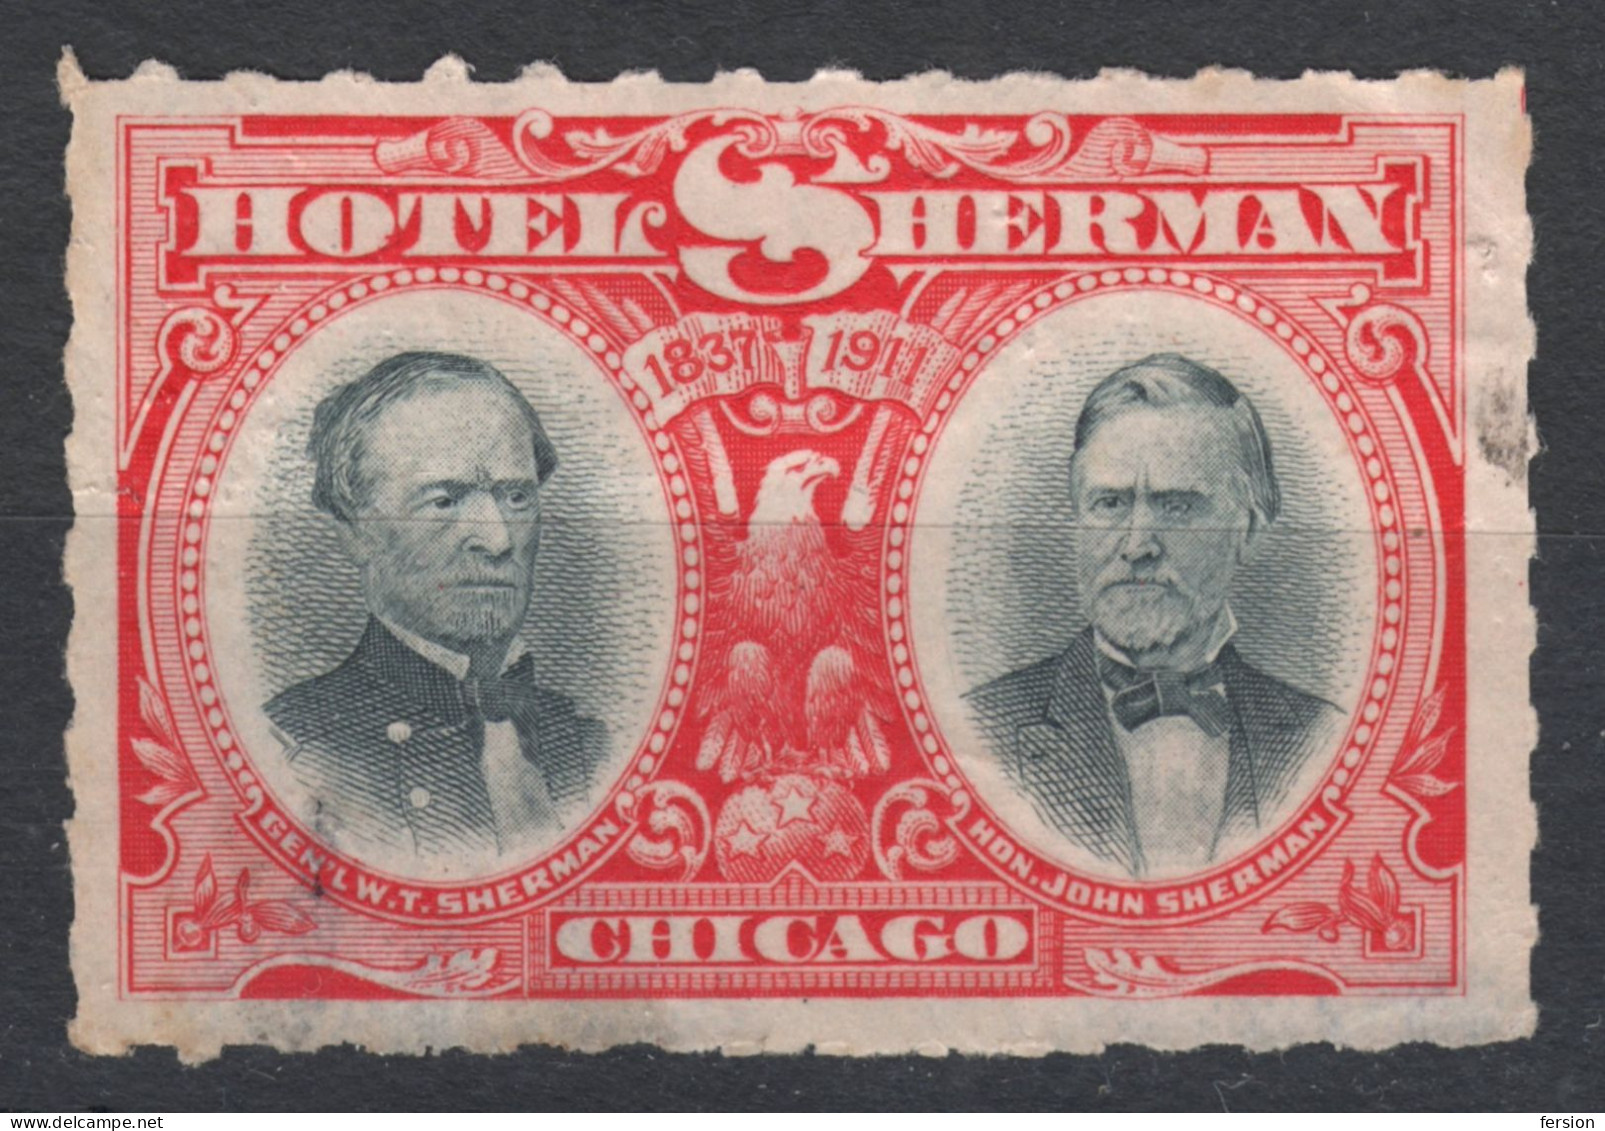 HOTEL SHERMAN CHICAGO USA 1911  - USA Stamp Label Cinderella Vignette / Eagle - Settore Alberghiero & Ristorazione